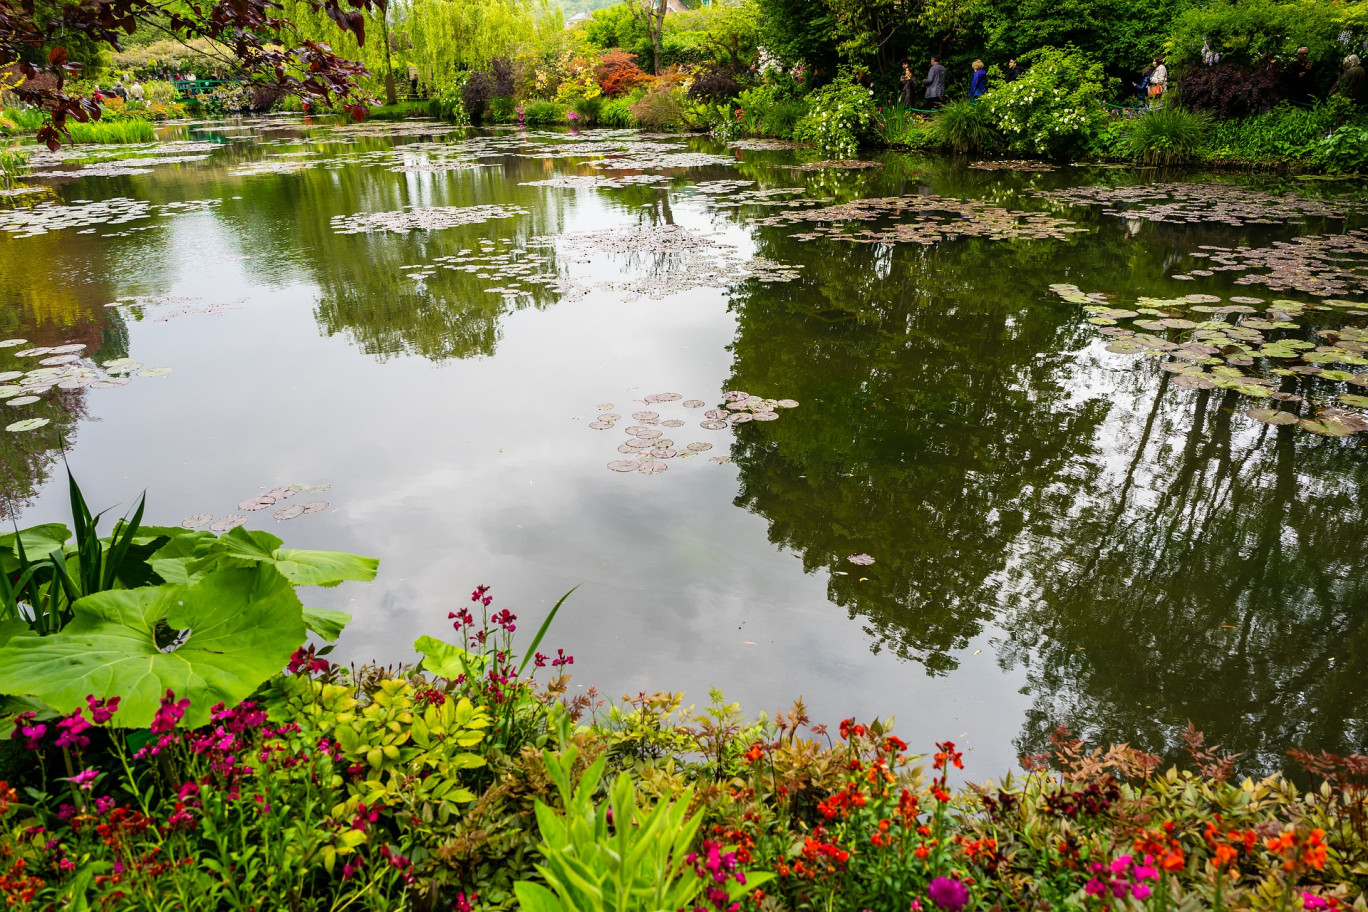 Les jardins de Claude Monet rouvriront leurs portes au public